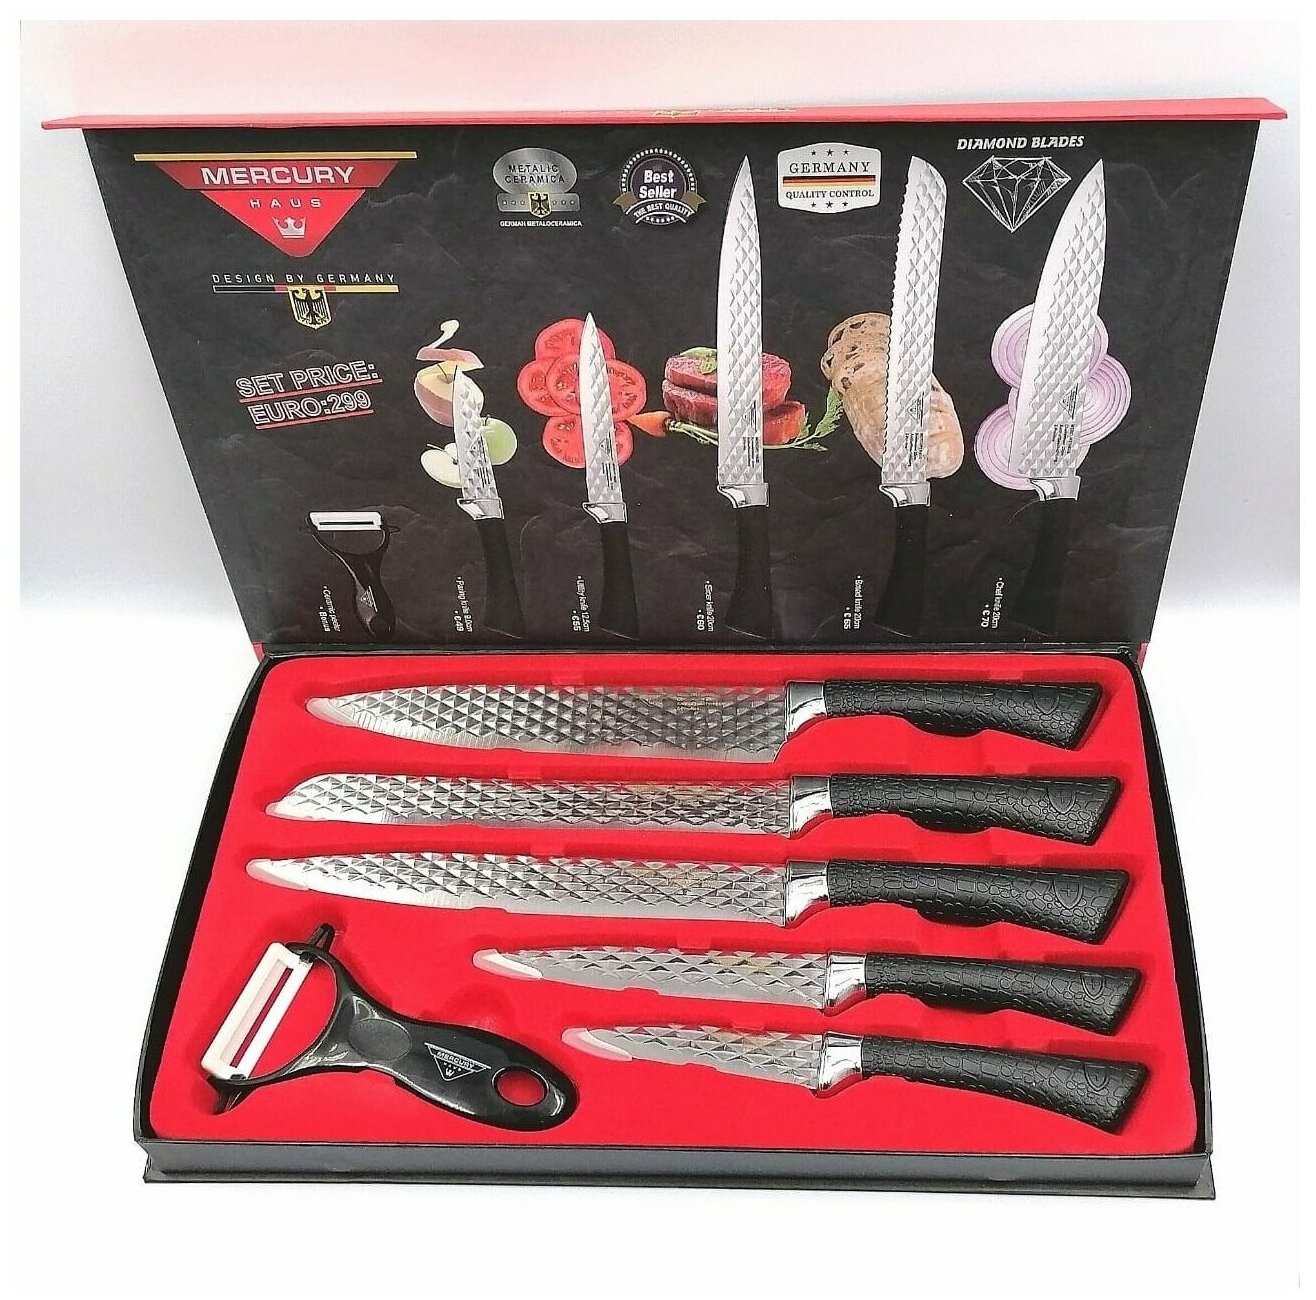 Уникальный набор ножей / Подарочный набор ножей в красивой магнитной коробке 6 предметов / Универсальные ножи с антибактериальный покрытием